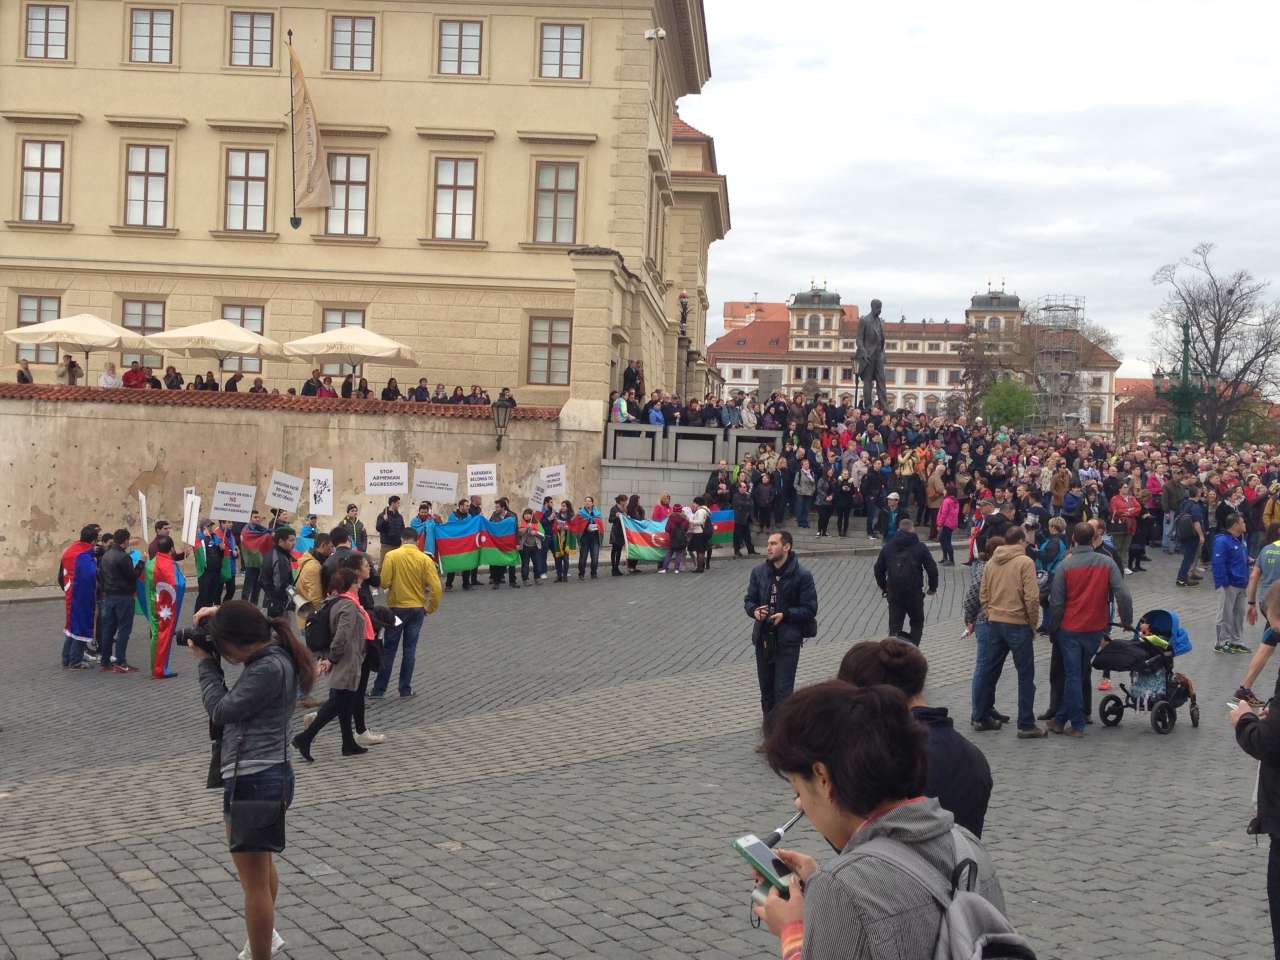 В Праге прошла акция протеста, требующая положить конец армянской агрессии против Азербайджана (ФОТО)